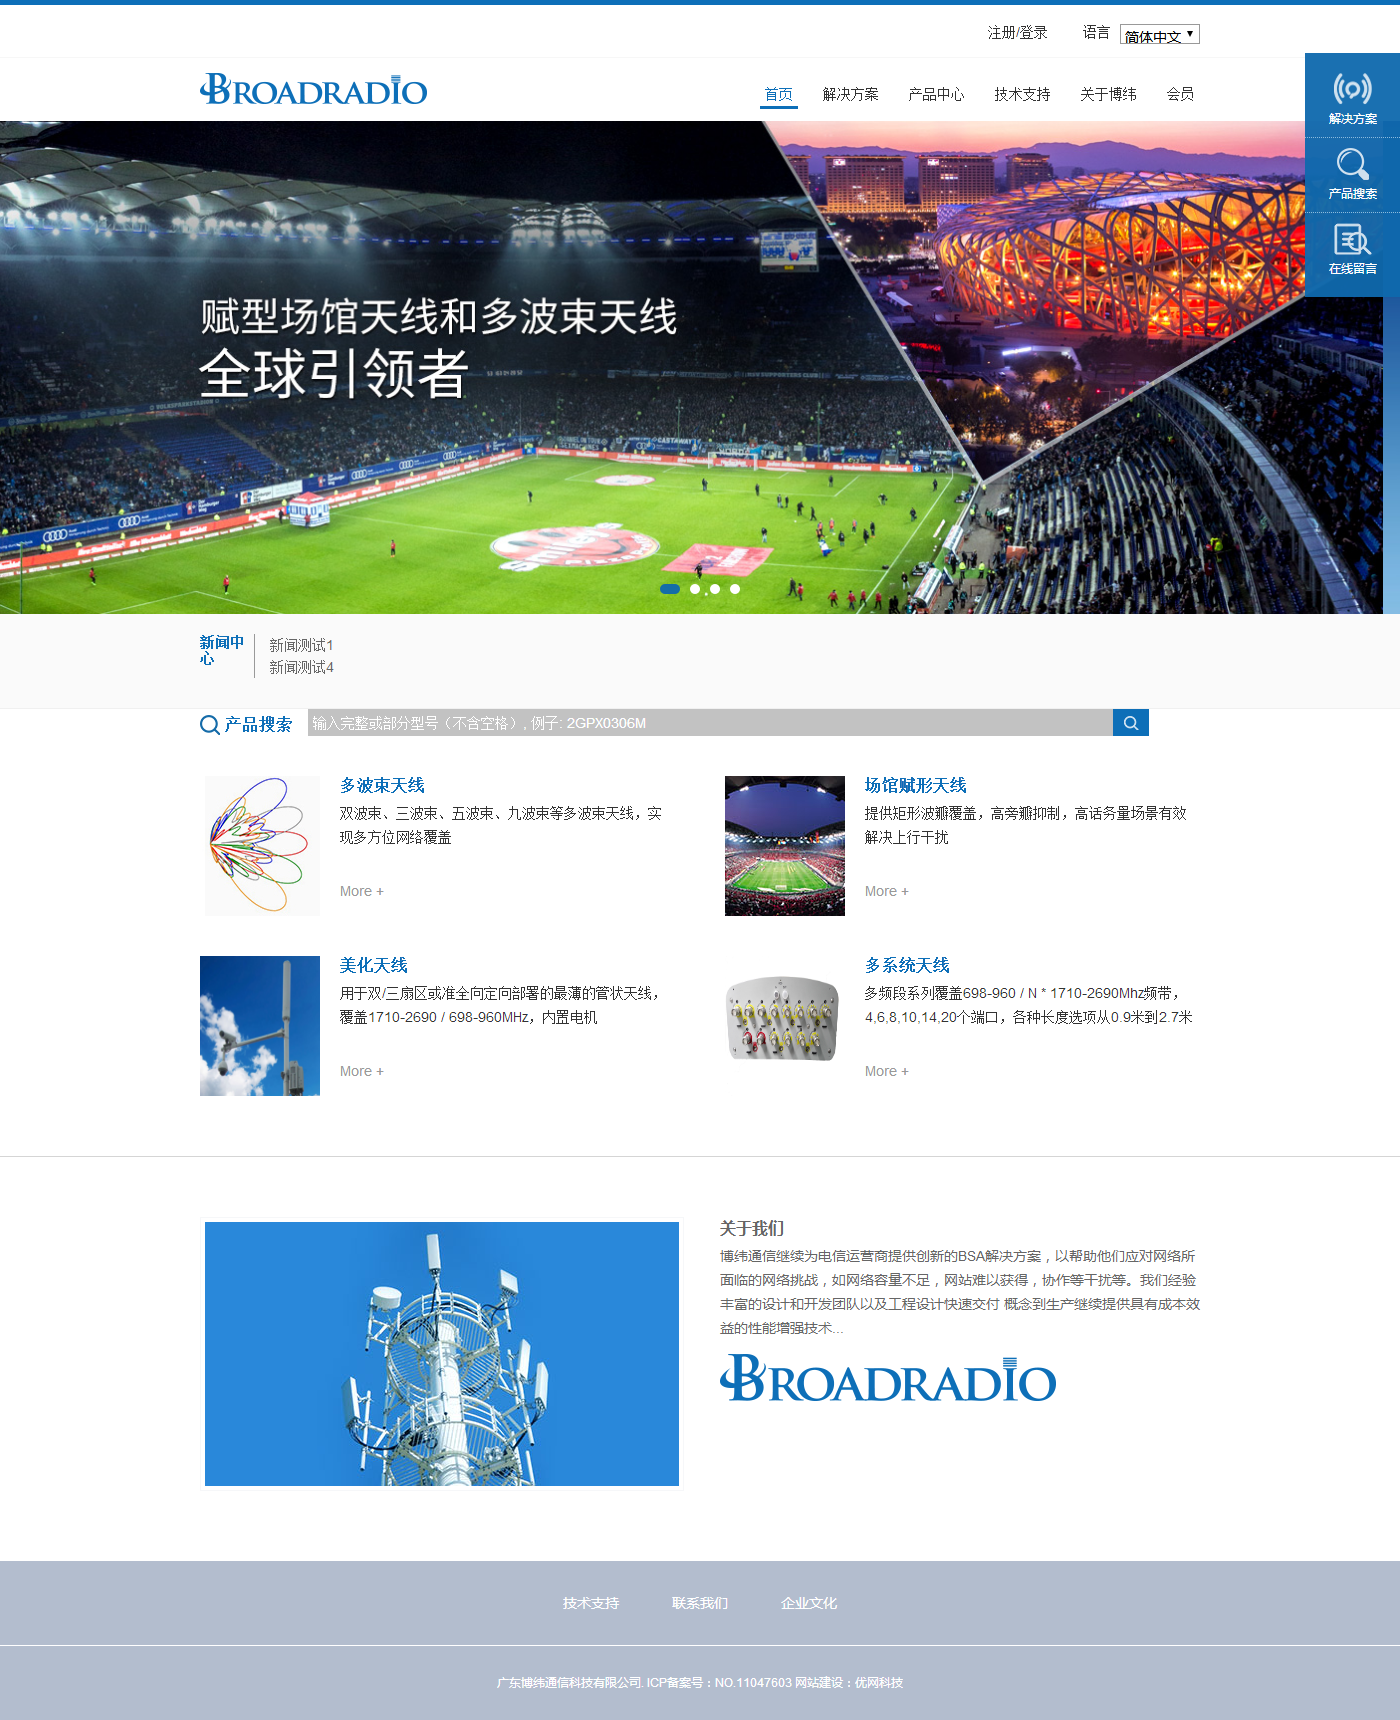 博纬通信中文网站建设项目开通上线啦！